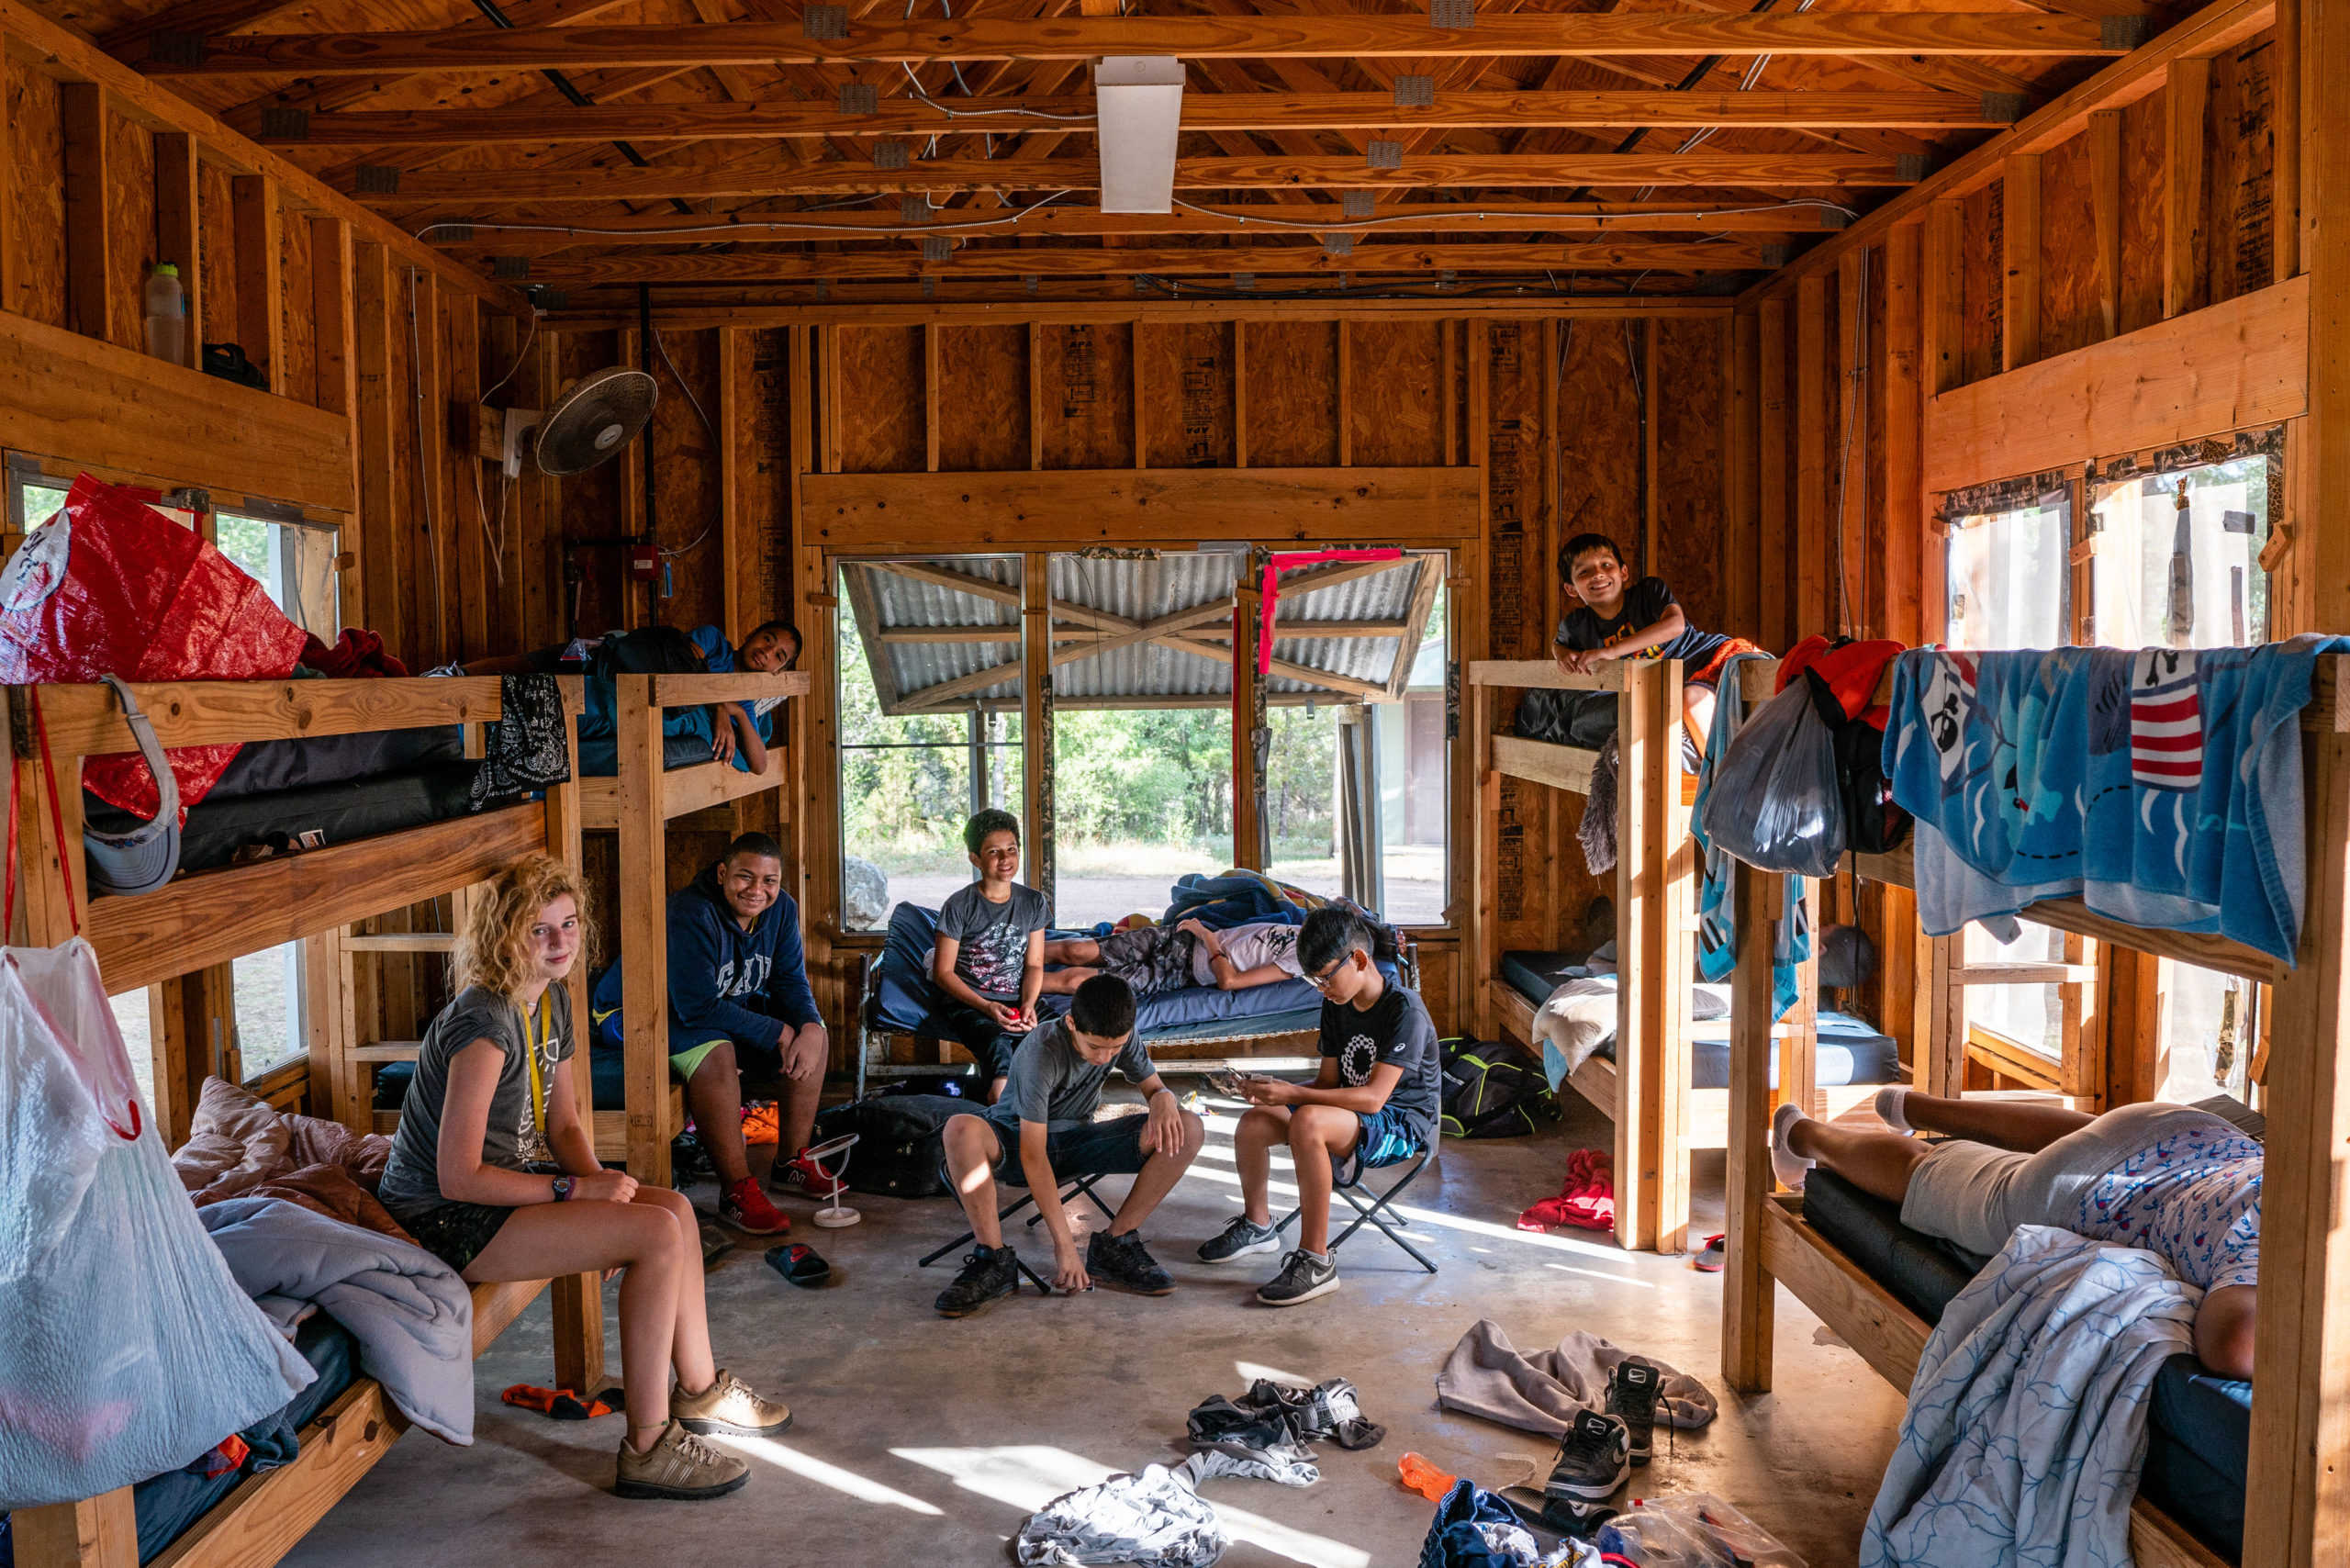 Un grupo de campistas de Austin Sunshine Camp pasando el rato en la cabaña durante el campamento de verano